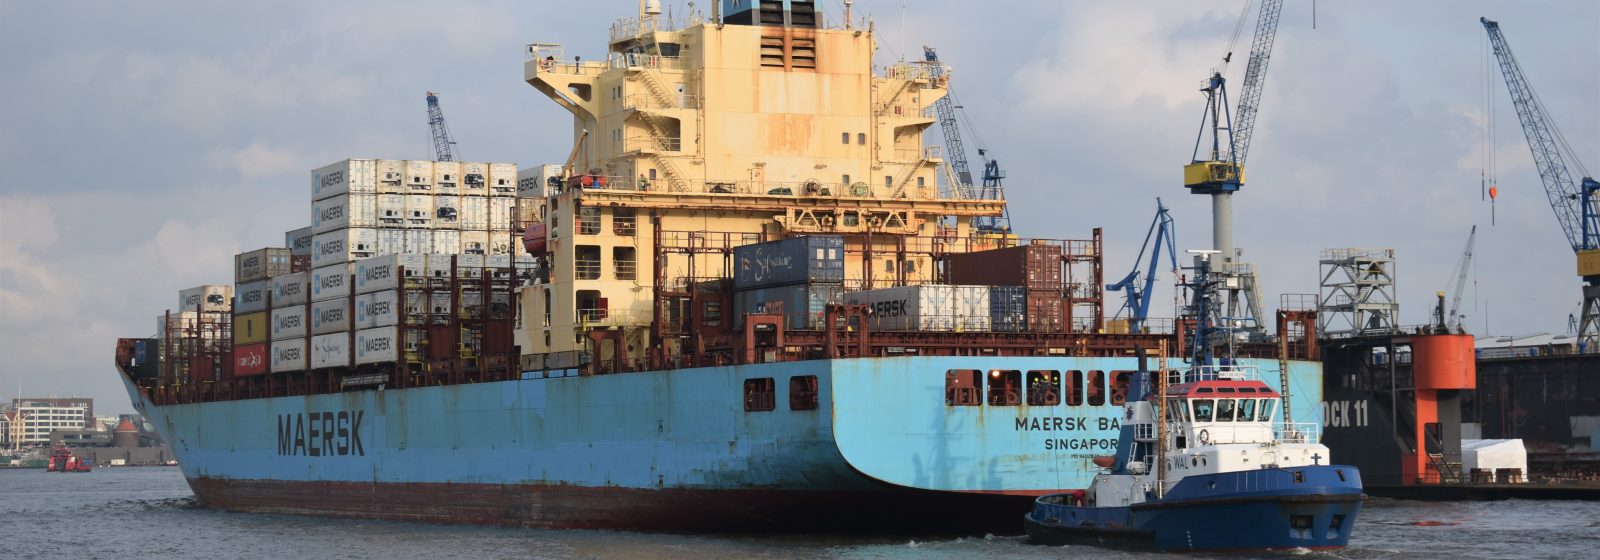 De 'Maersk Batur' van 3.075 teu